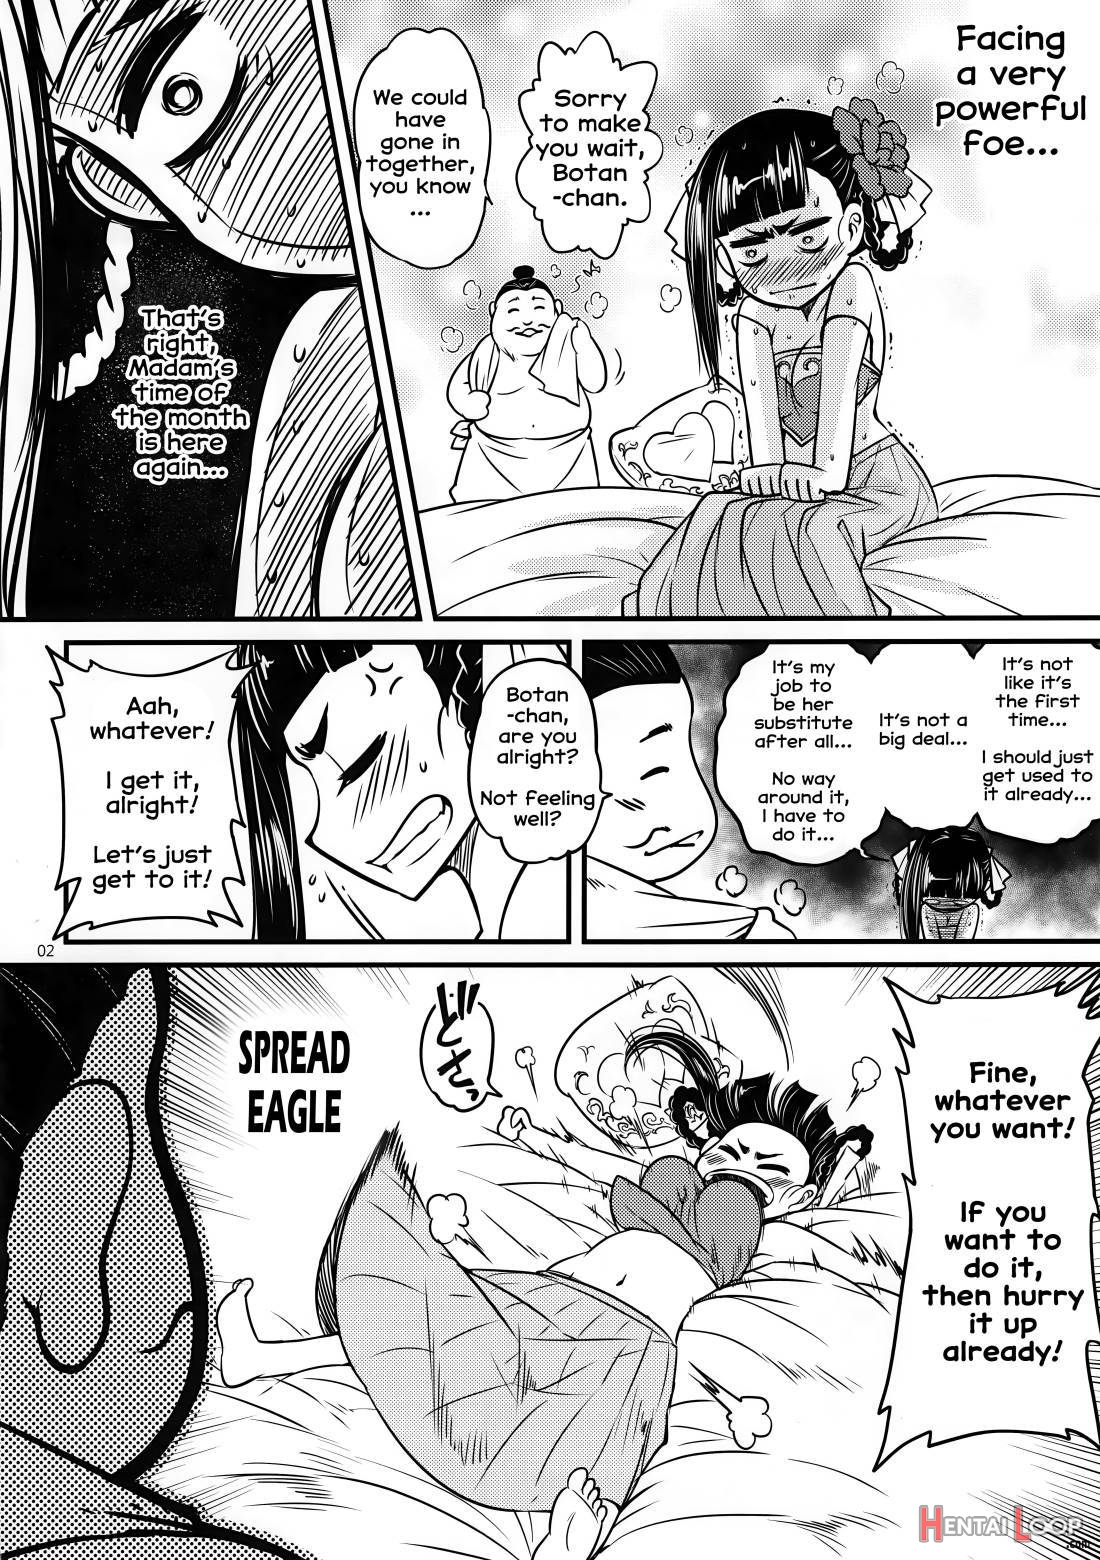 Hyakkasou3 《hekigan Rasetsu No Gyakushuu!》 page 3